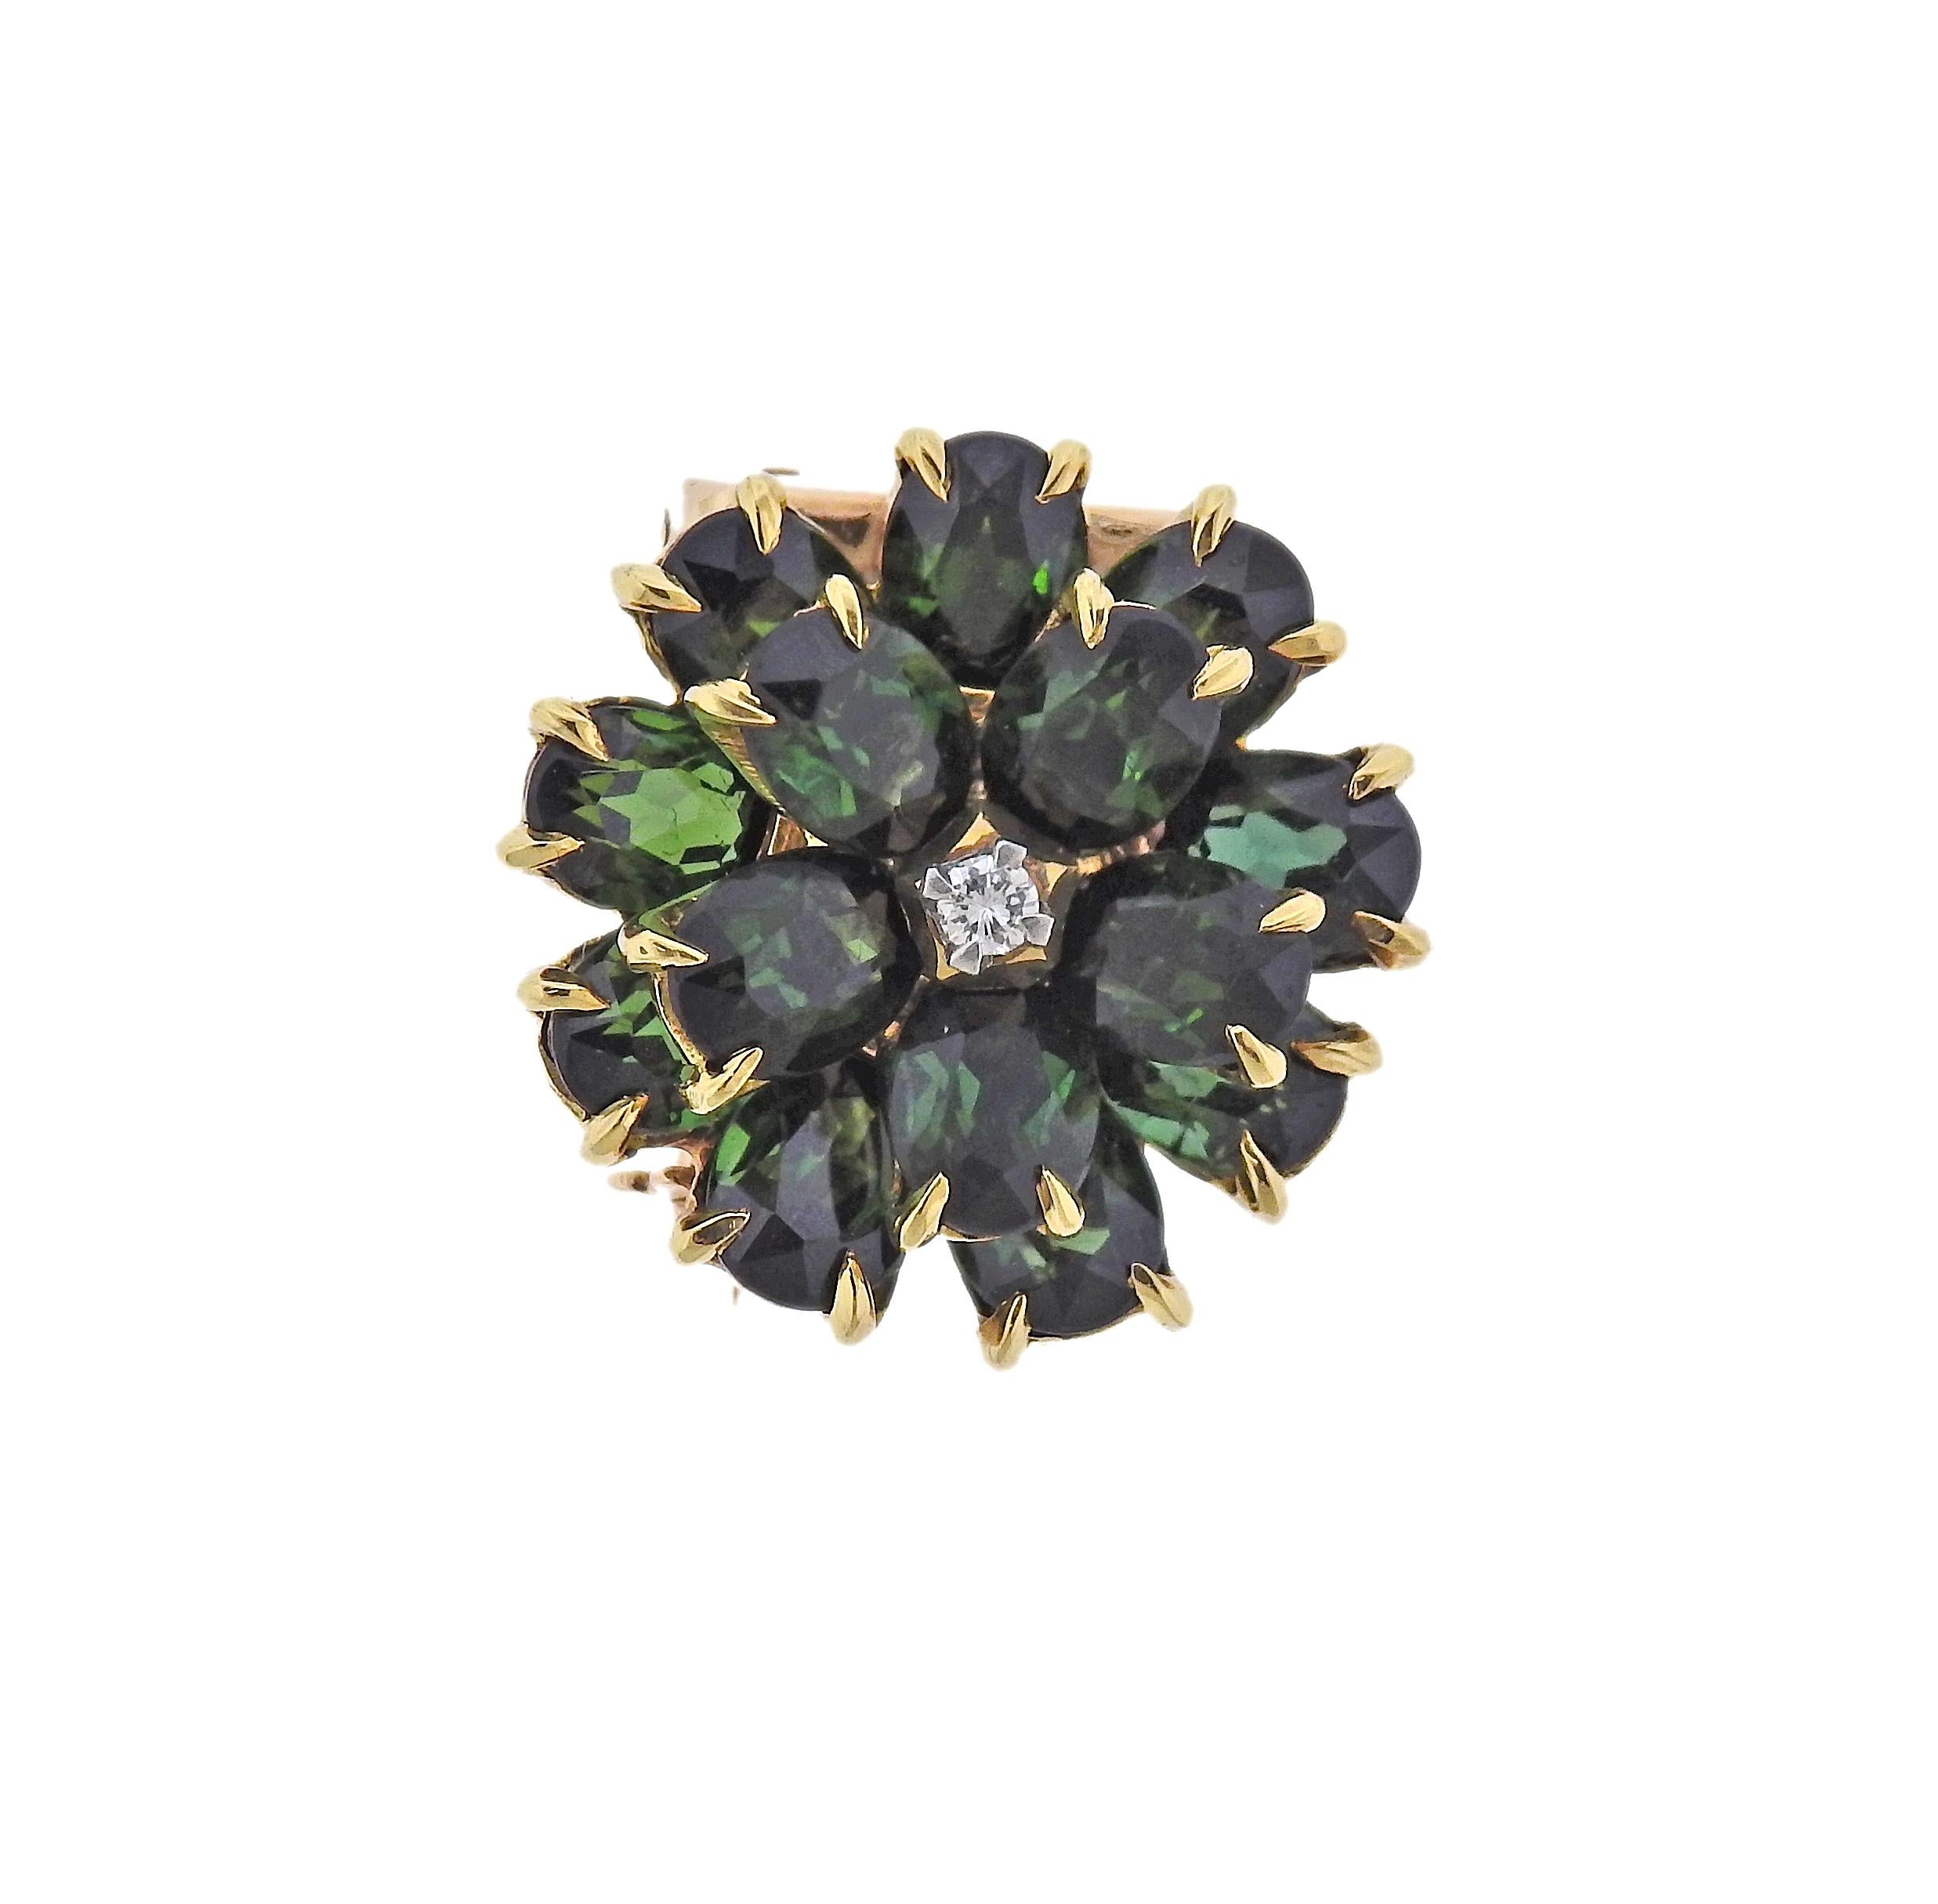 Retro 14k Gold Blume Brosche von Tiffany & Co, mit grünen Turmalinen und ca. 0,03ct G/VS Diamant in der Mitte. Die Brosche hat einen Durchmesser von 20 mm. Gezeichnet: Tiffany & Co. Gewicht 9,4 Gramm.